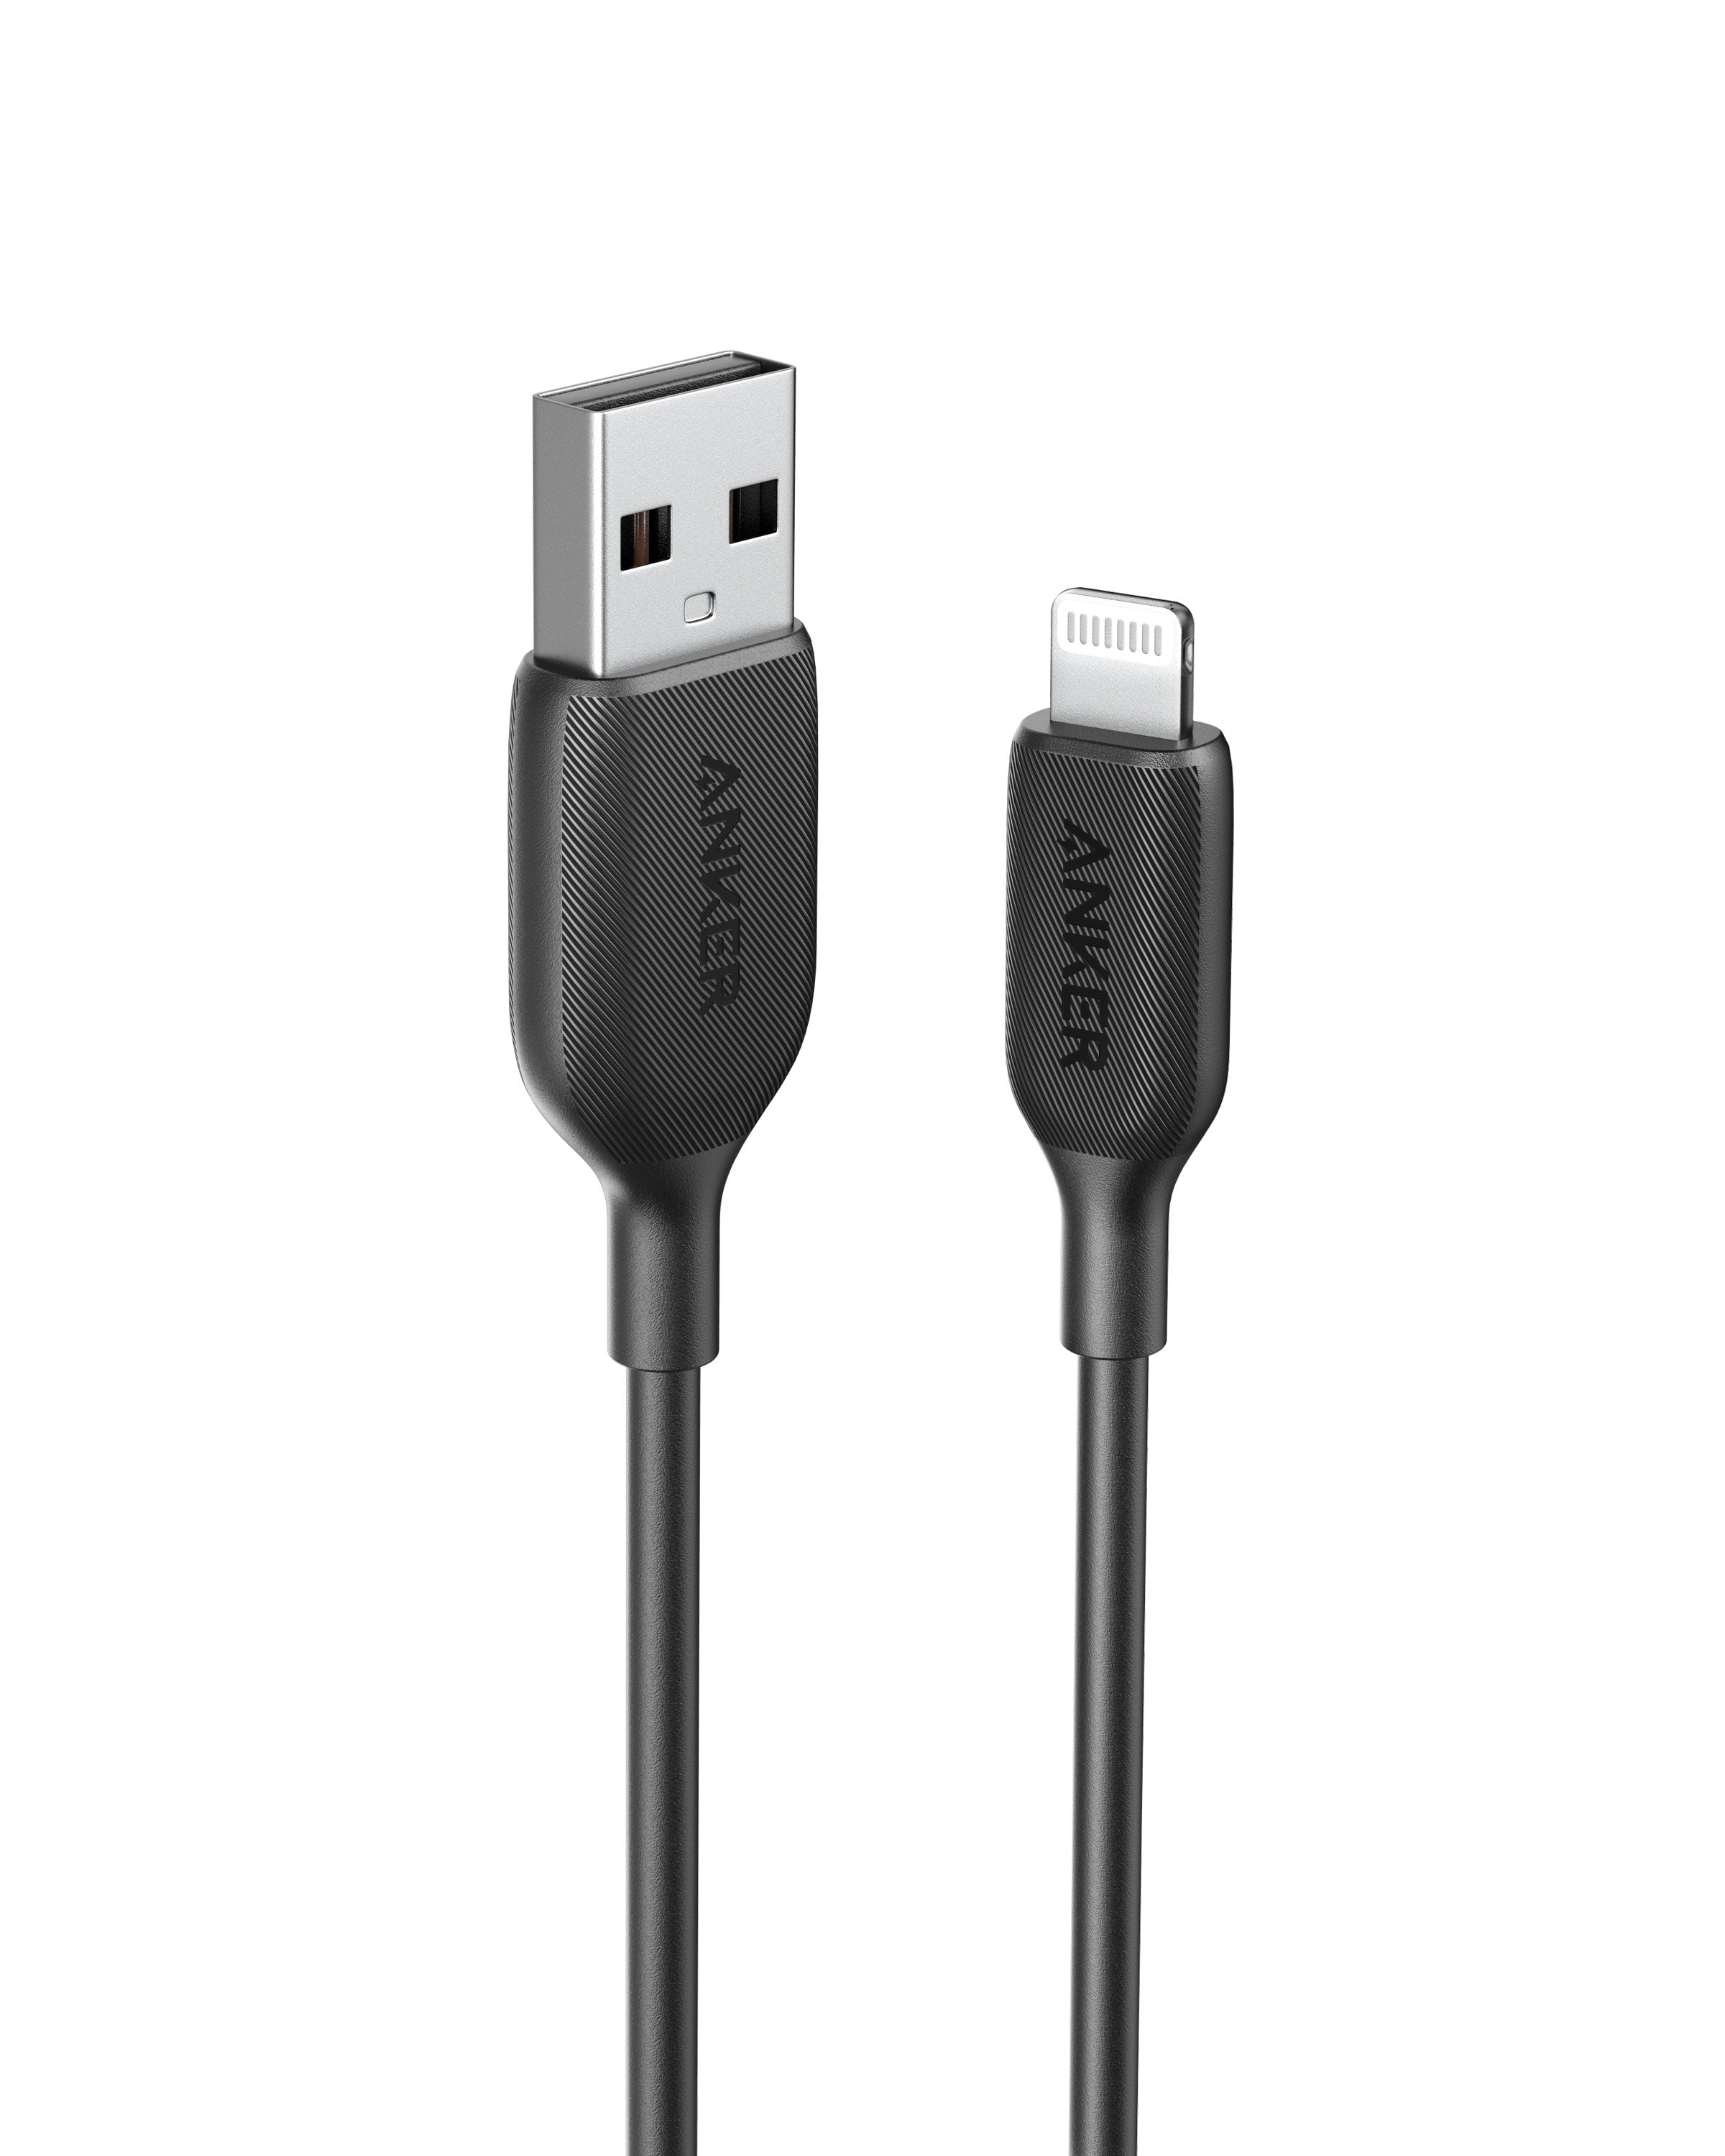 Anker 762 USB-C to Lightning Cable (3 ft / 6 ft Nylon)